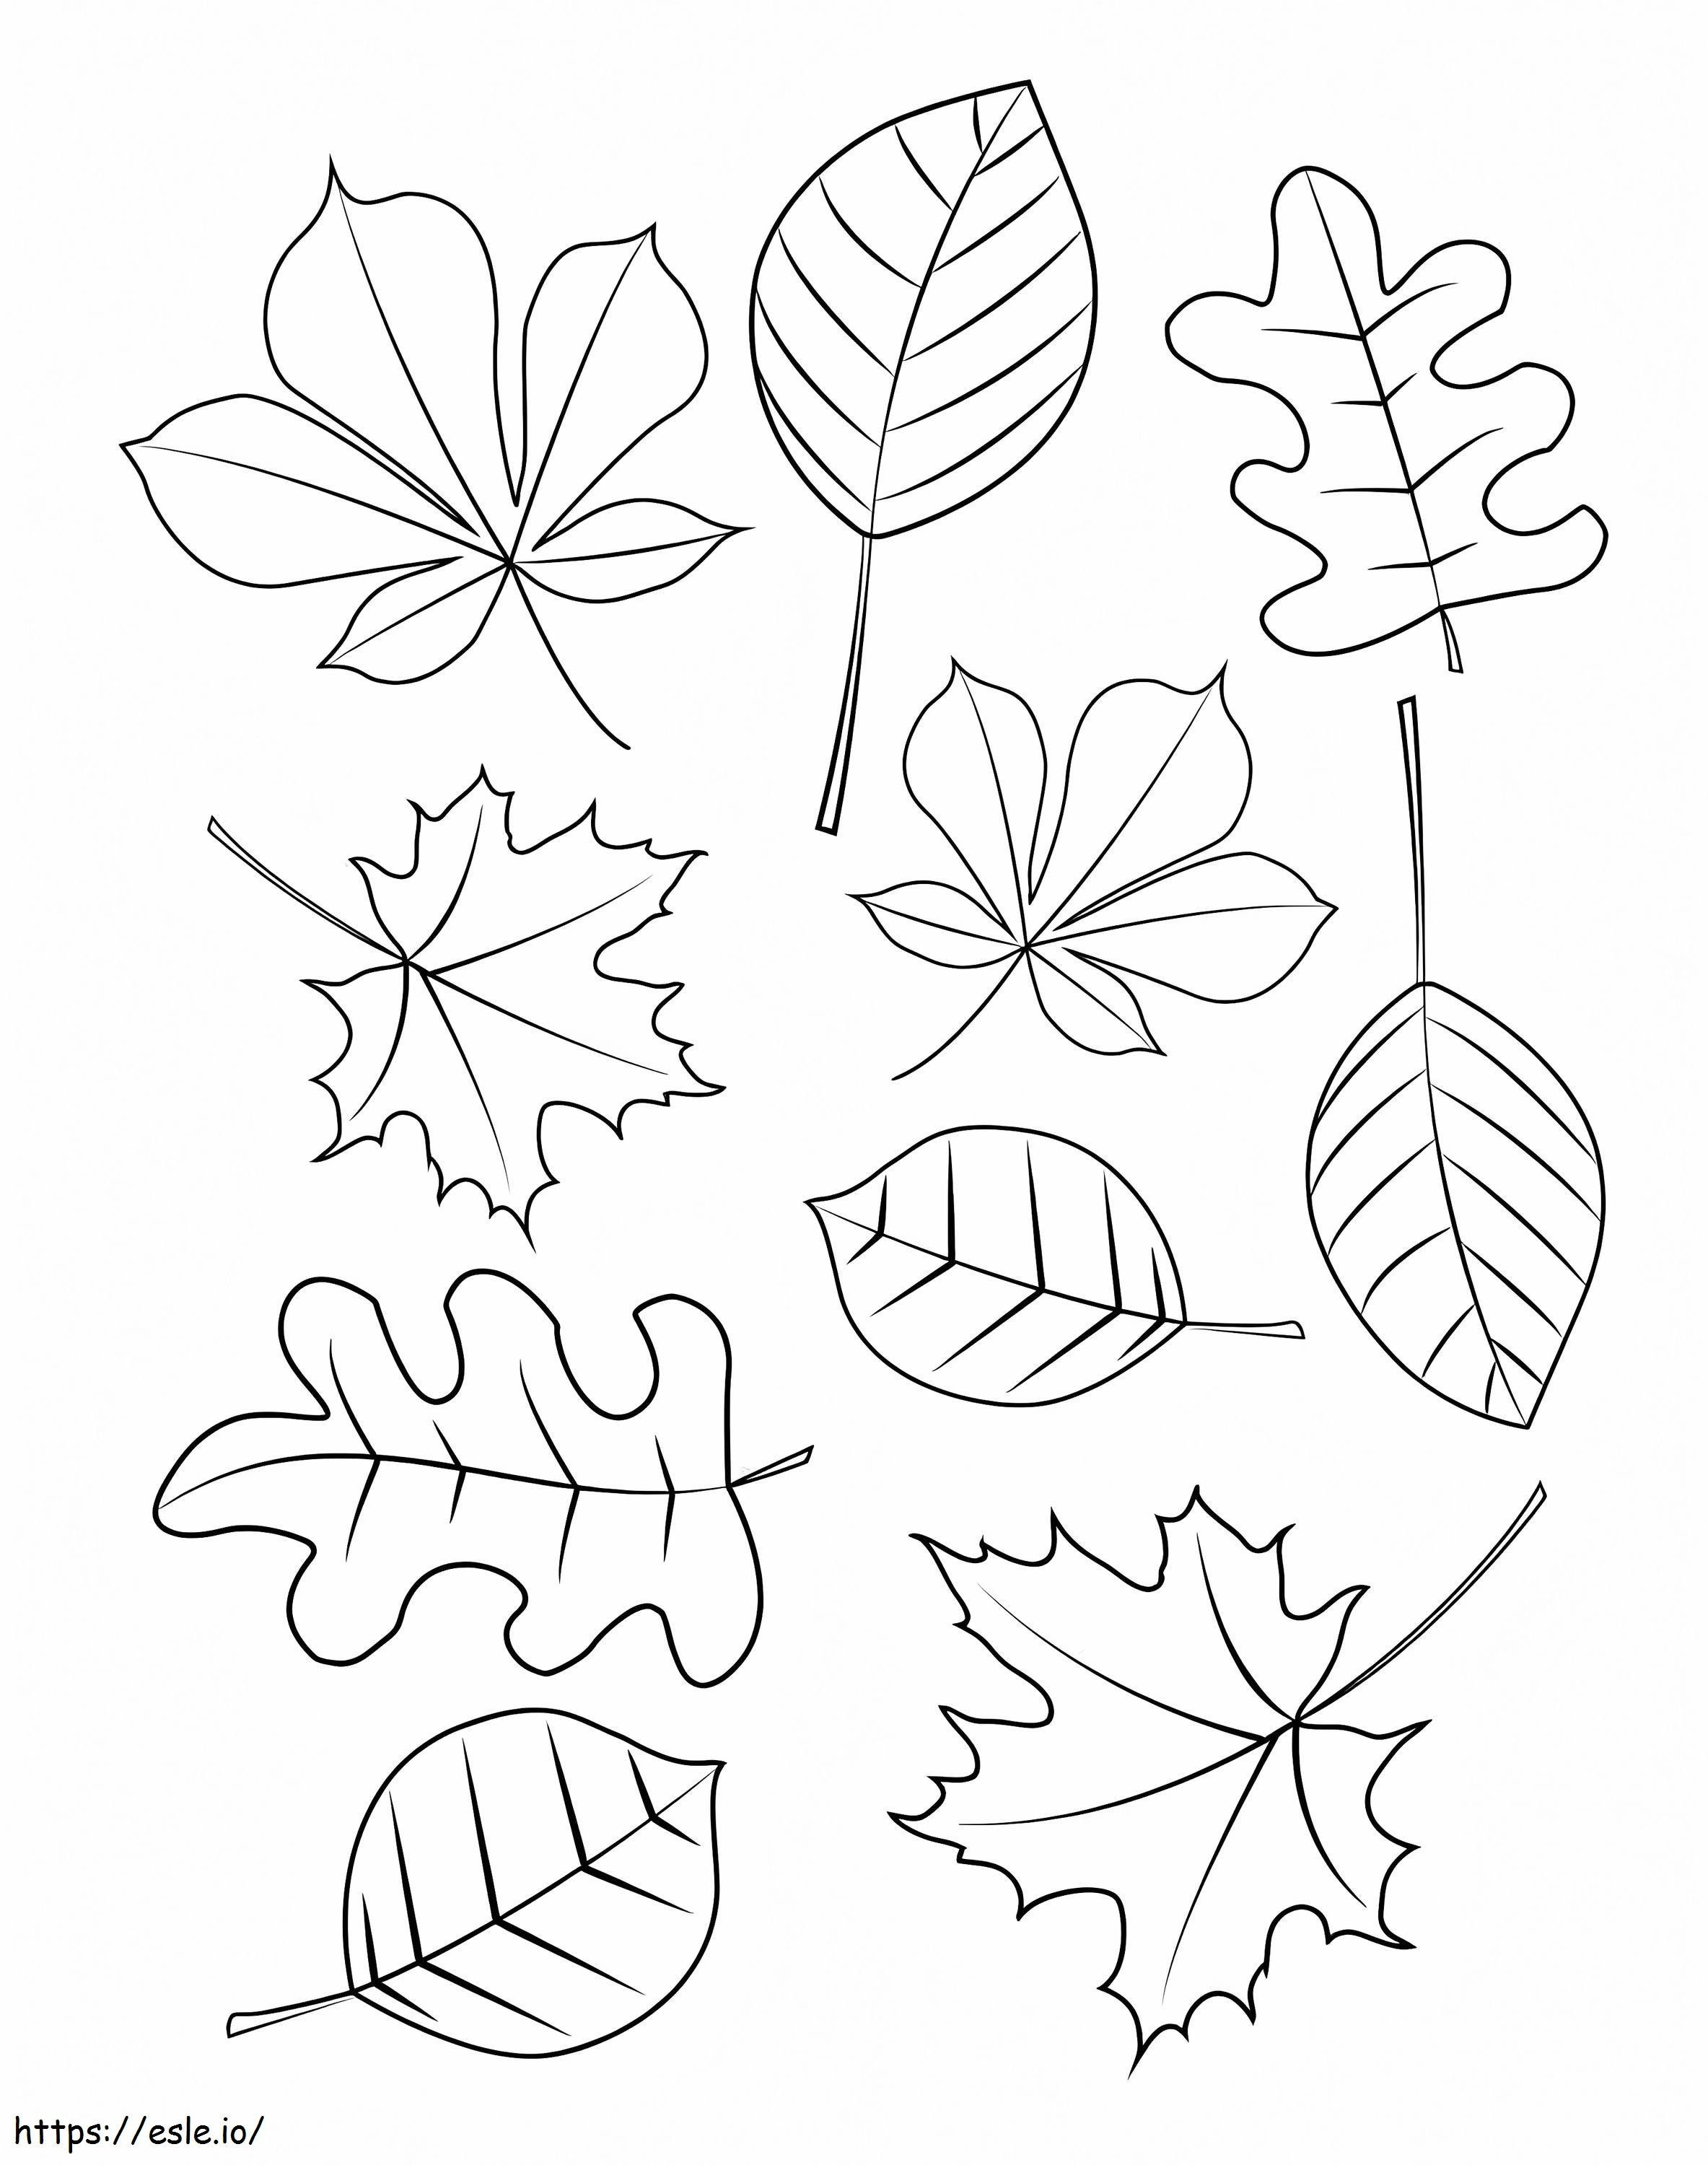 Zehn Blätter des Herbstes ausmalbilder